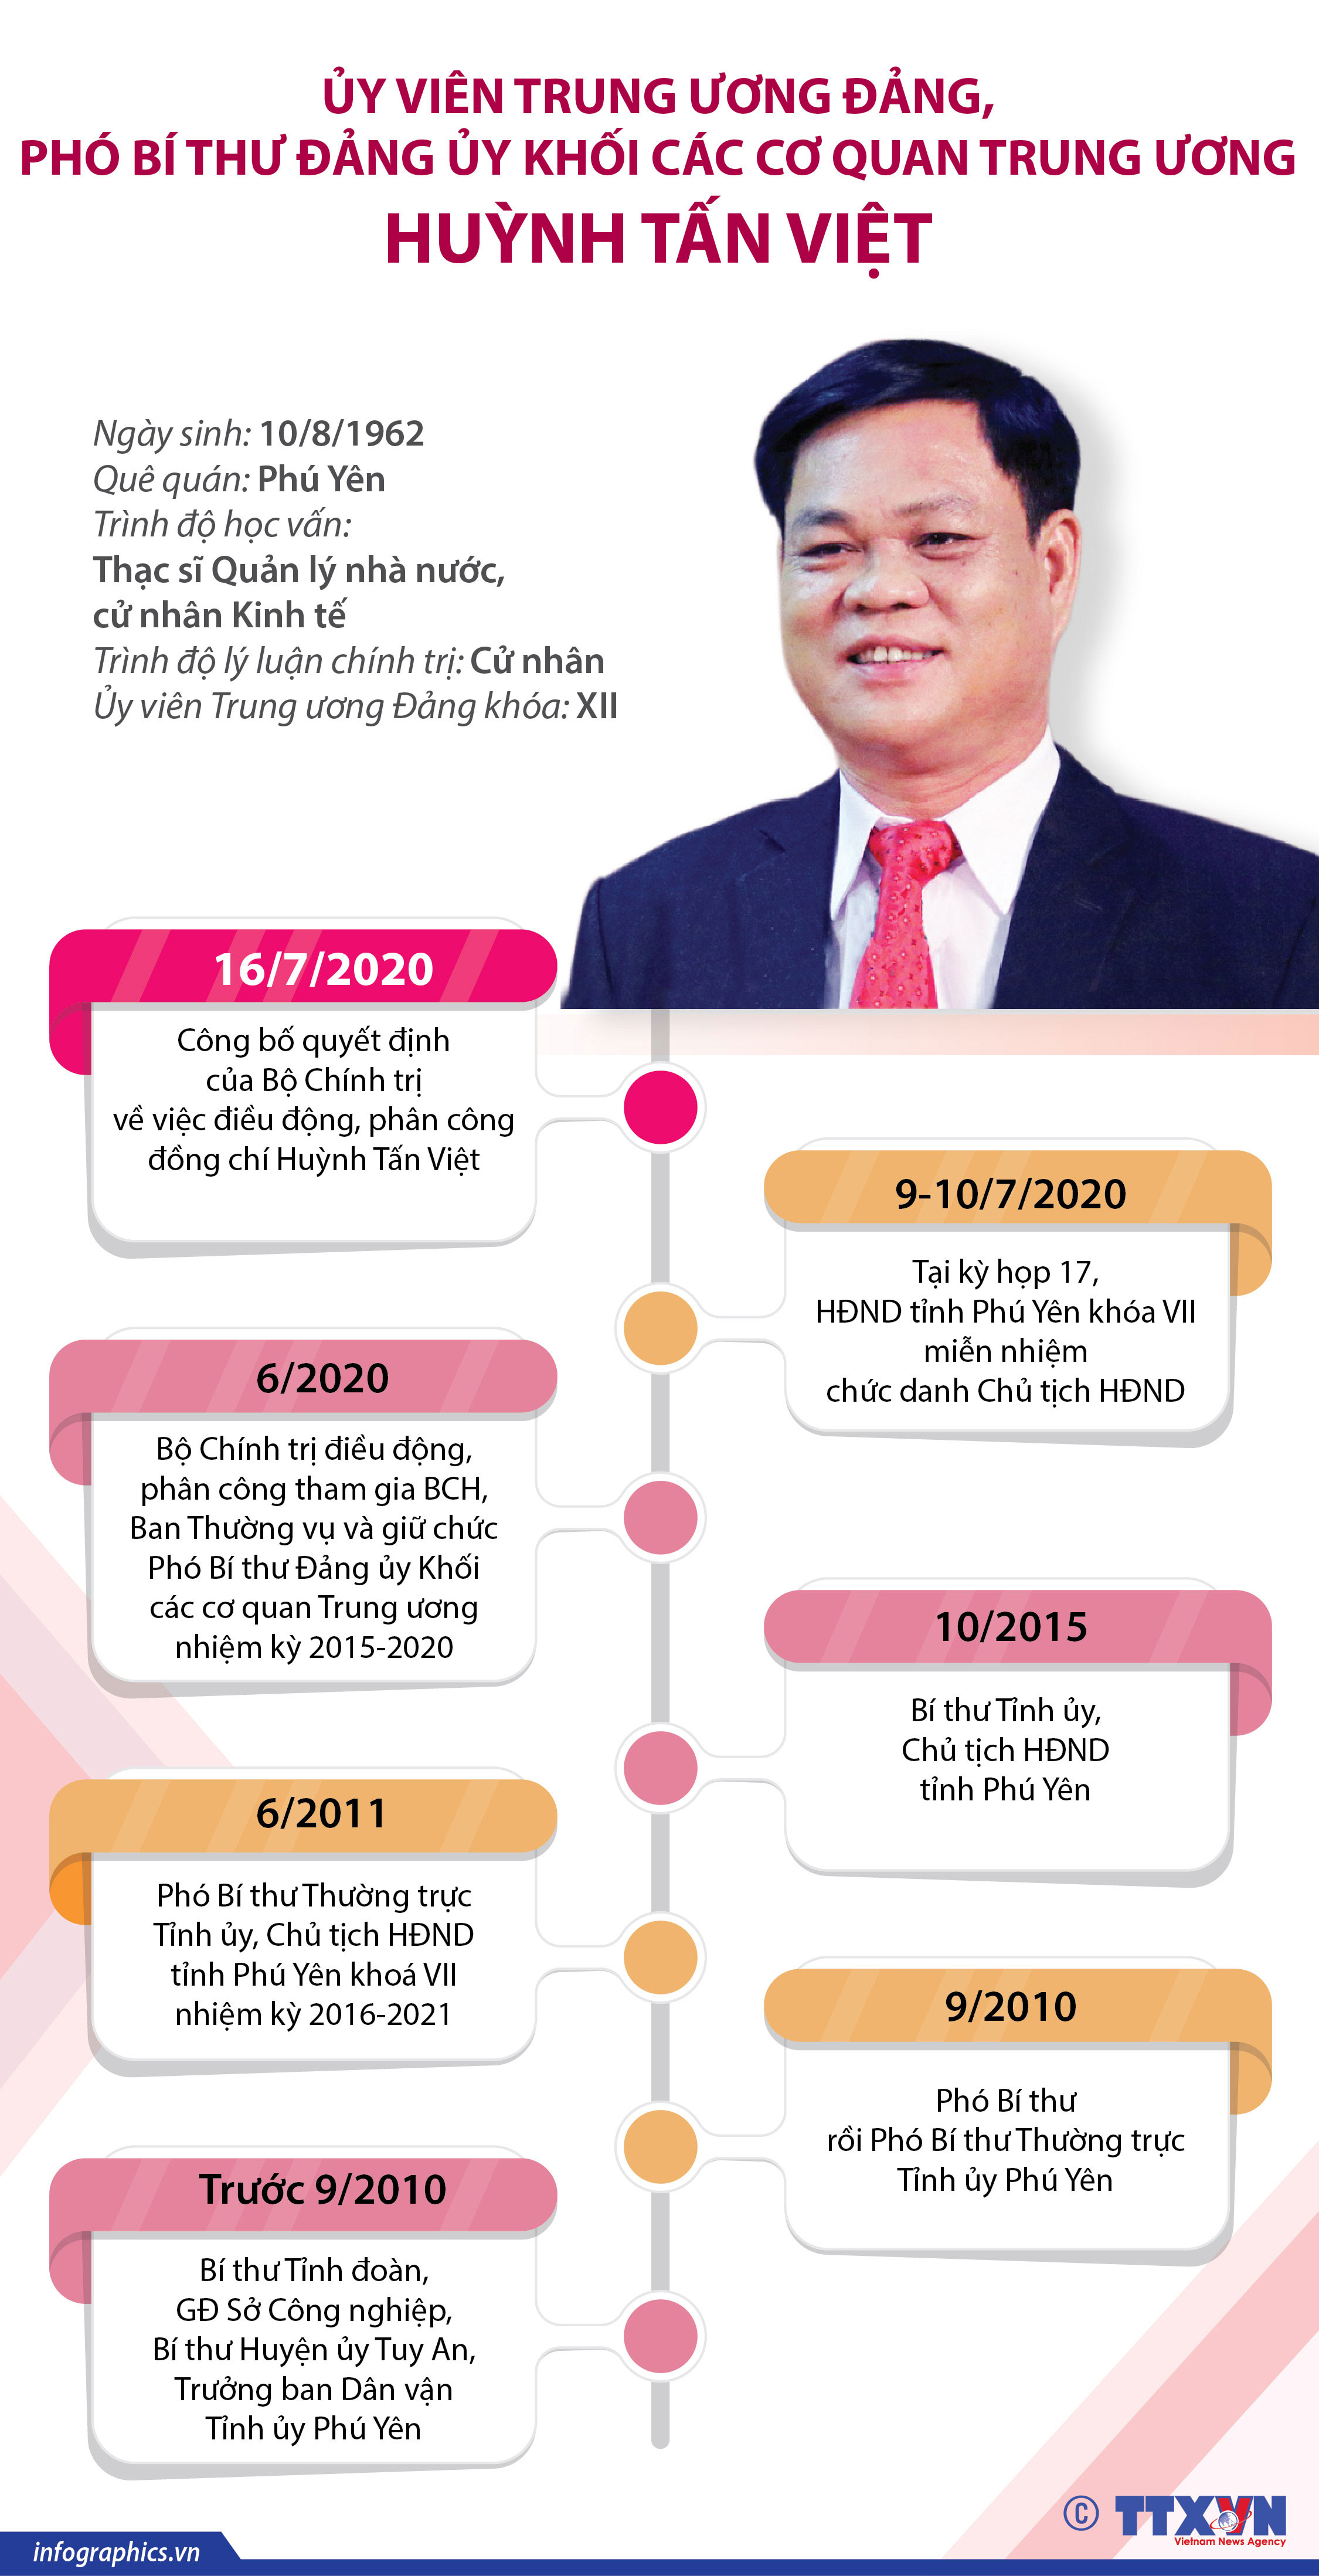 Huỳnh Tấn Việt là một chính trị gia nổi tiếng của nước Việt Nam dân chủ cộng hòa